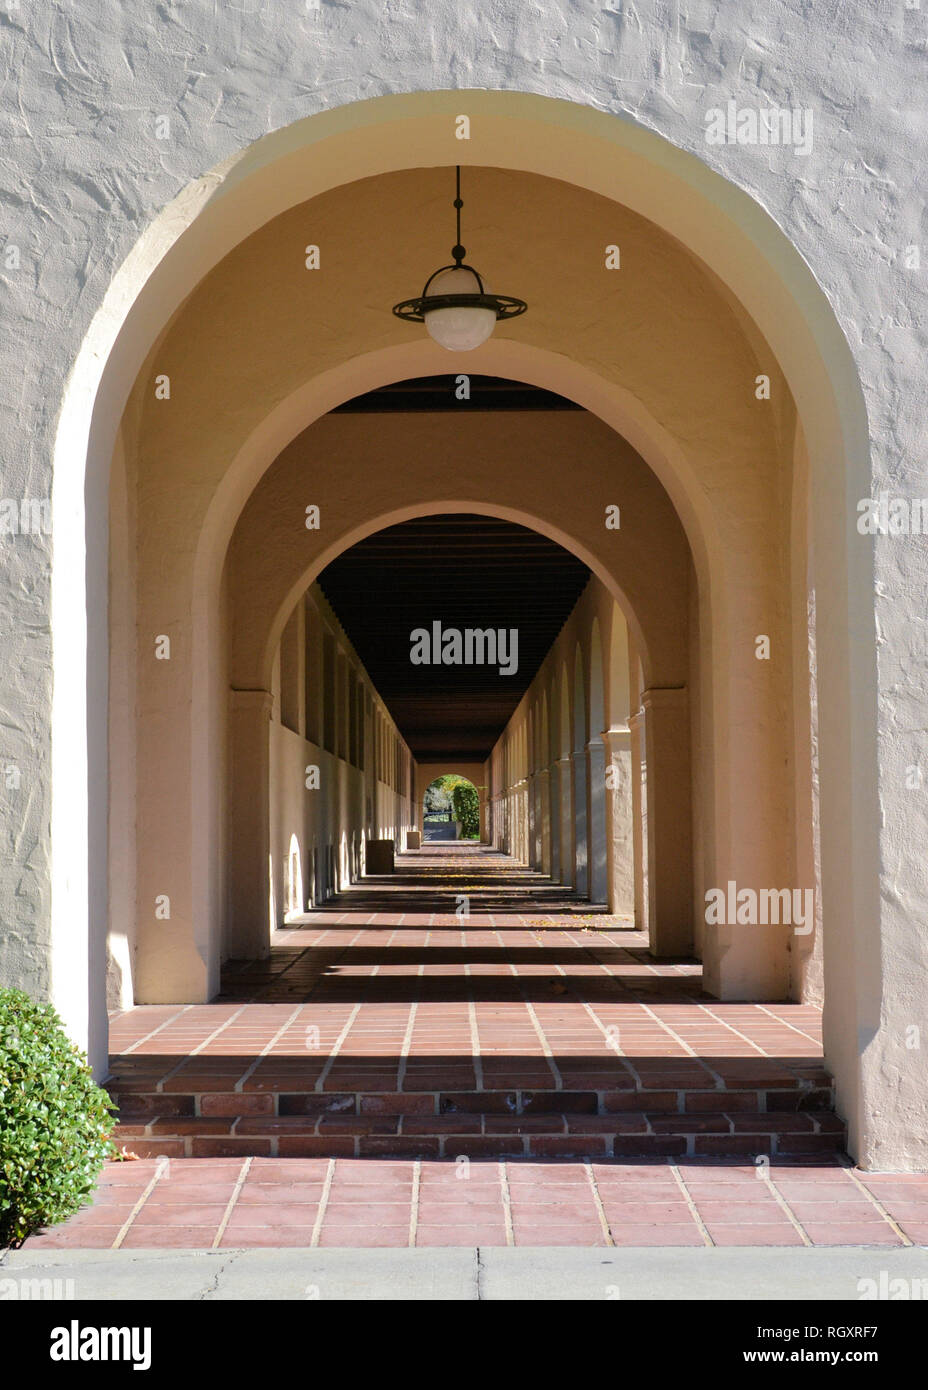 Passage voûté sur le campus de l'Institut de technologie de Californie, Pasadena, Californie, USA ; Caltech avec arches. Banque D'Images